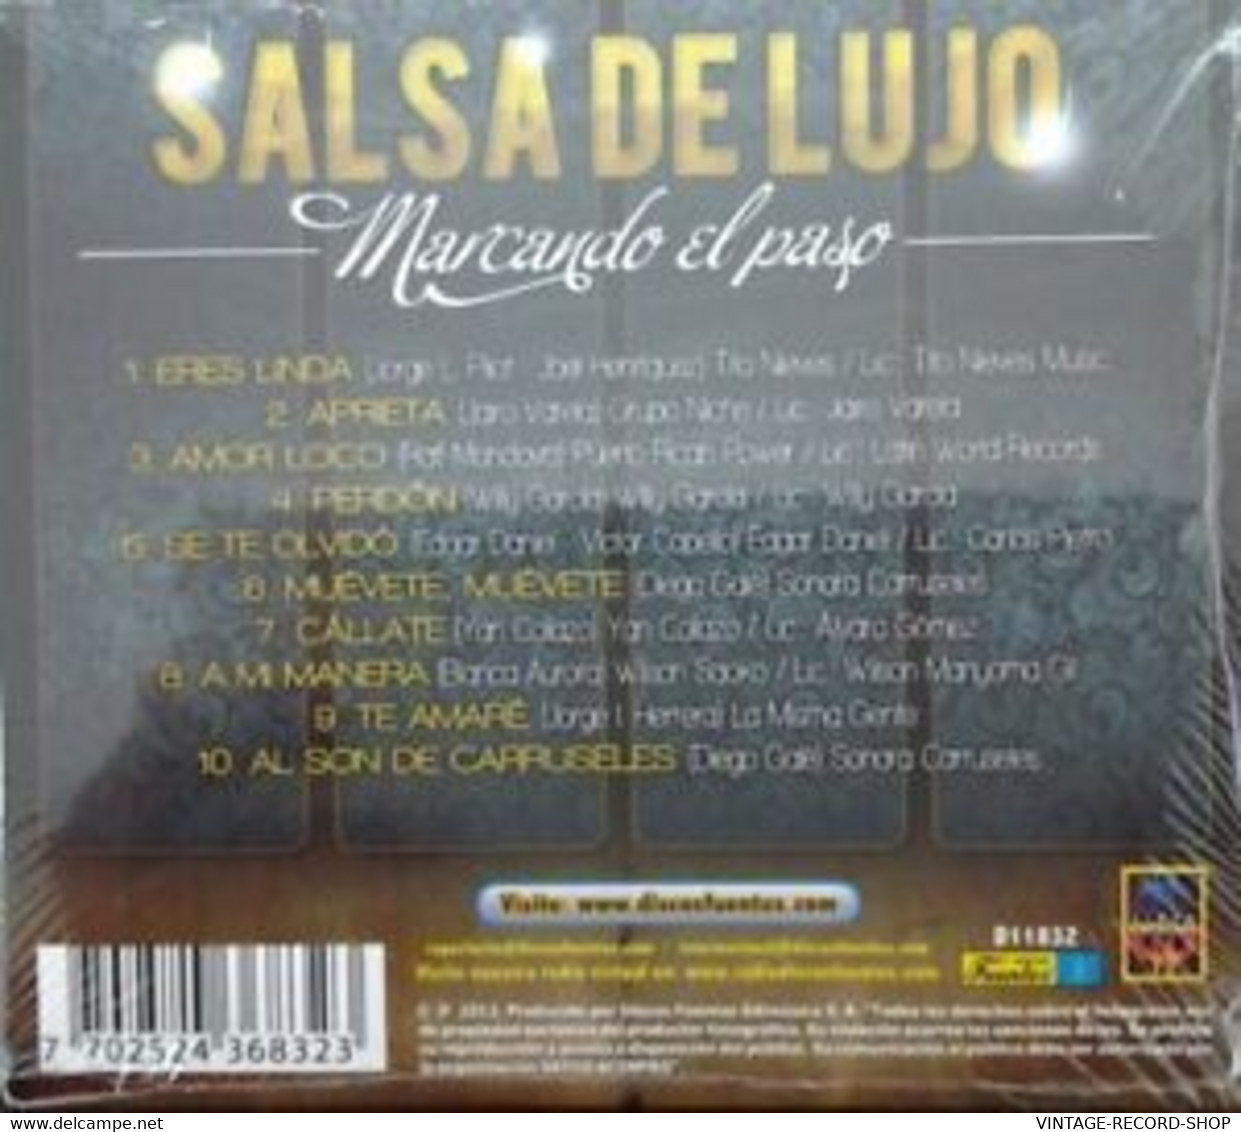 CD SALSA SALSA DE LUJO MARCANDO EL PASO -DISCOS FUENTES 2012 SEALED - Autres - Musique Espagnole